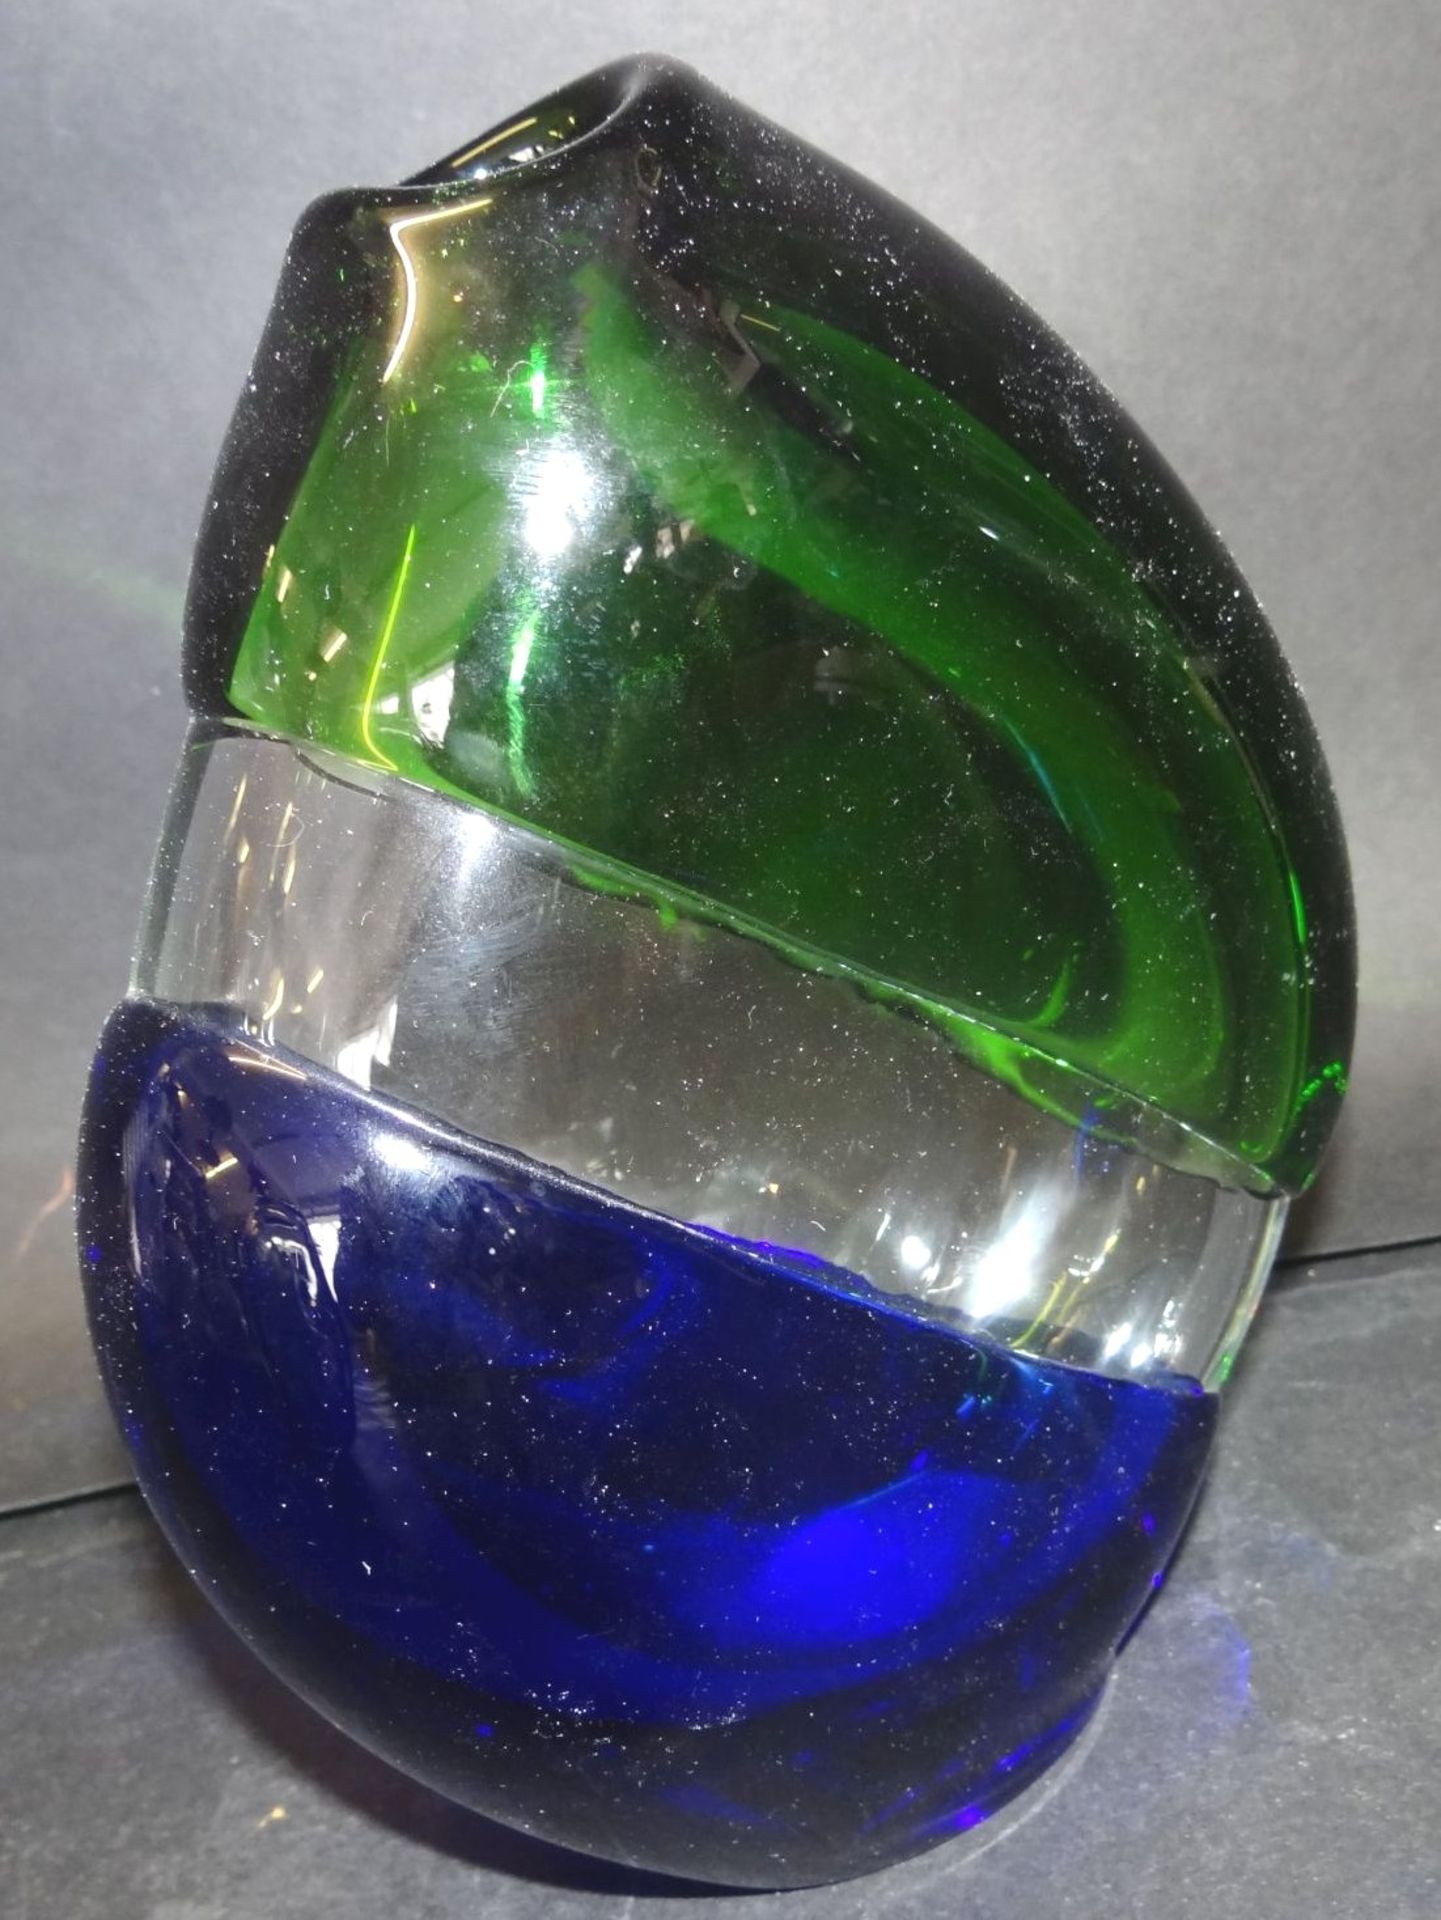 grosse, schwere Kunstglas-Vase, grün/weiss/blau, 18x14 c - Image 2 of 4